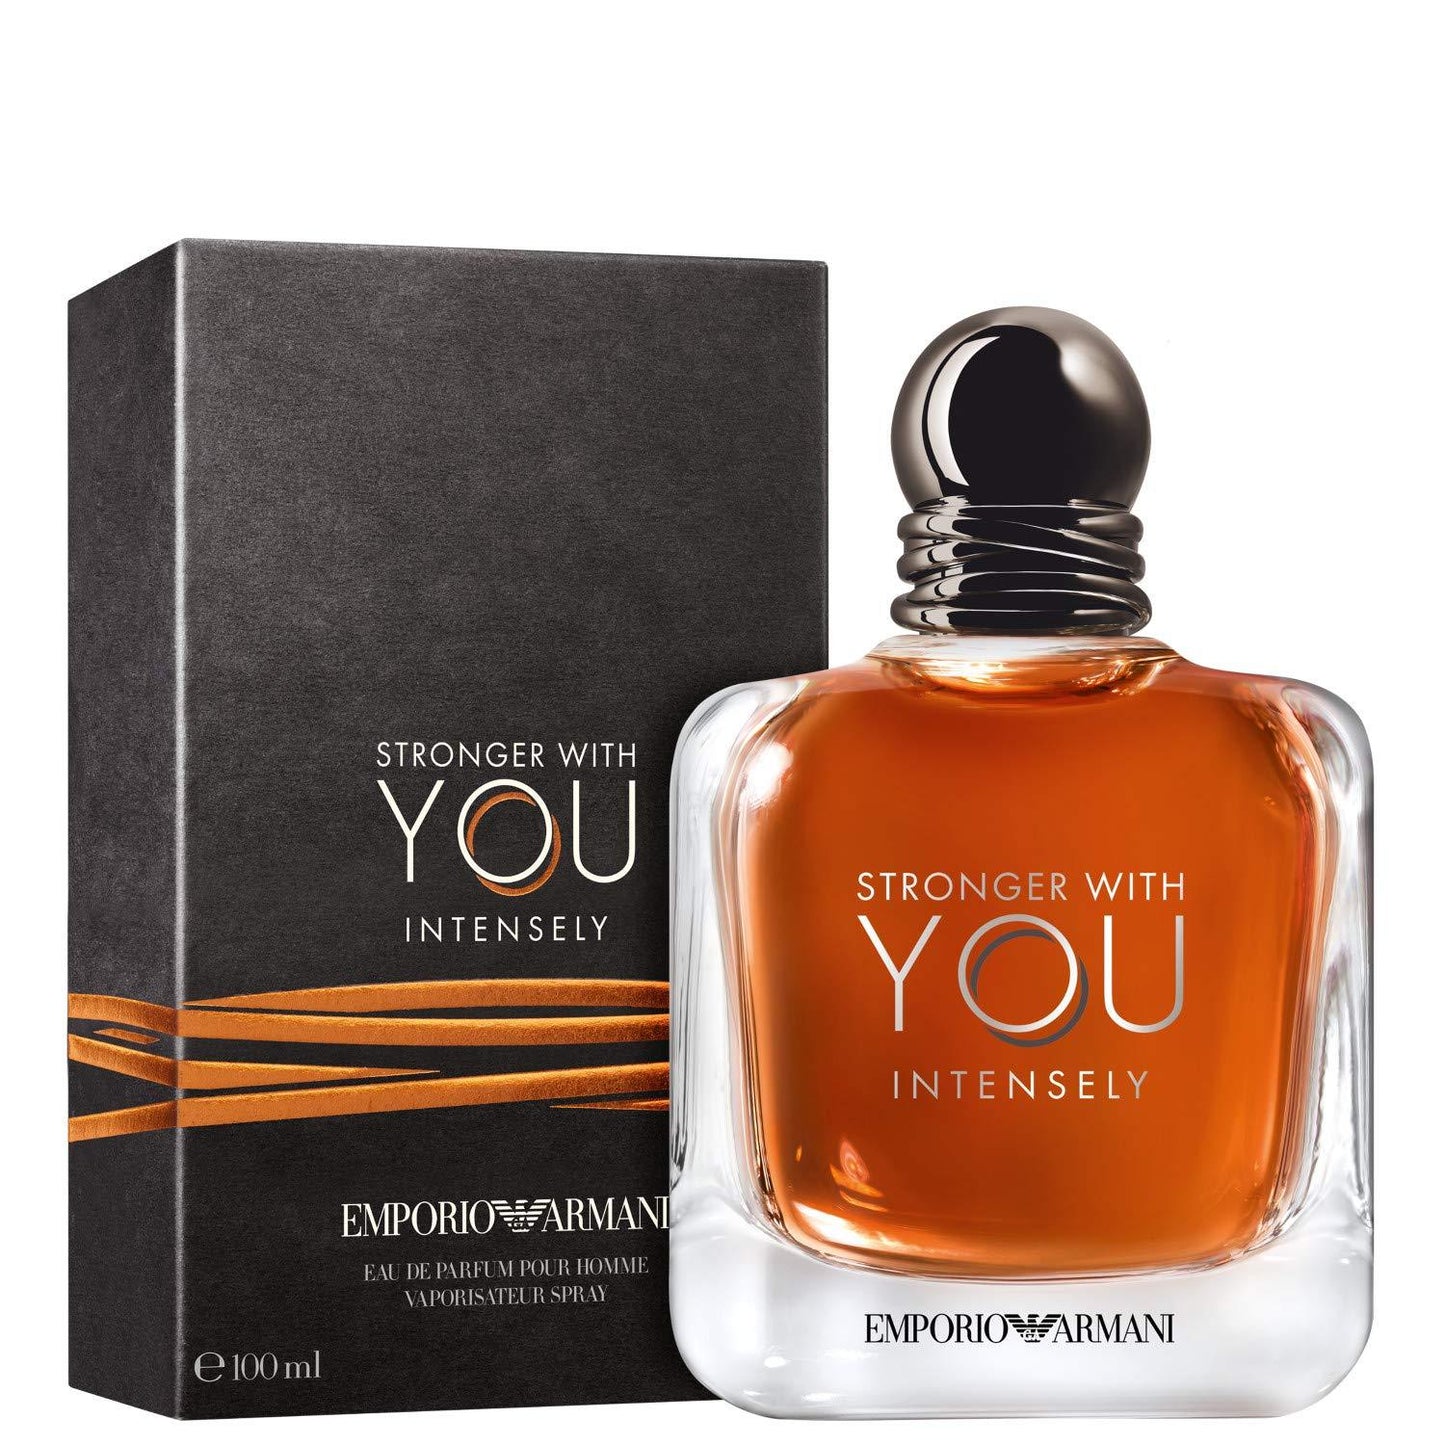 Stronger with You Intensely Eau de Parfum